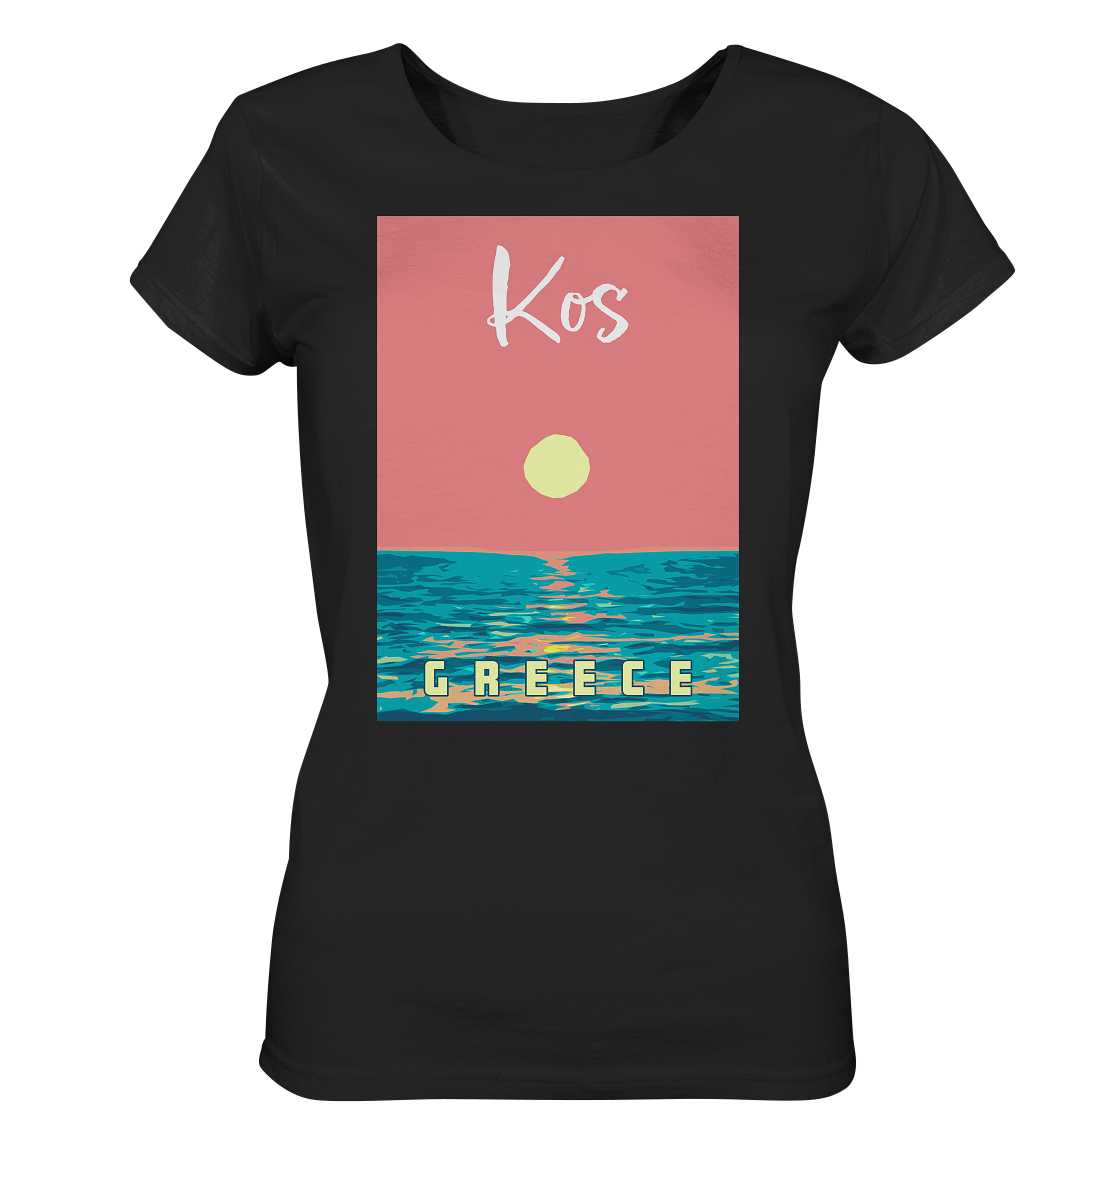 Sunset Ocean Kos Greece - Ladies Organic Shirt